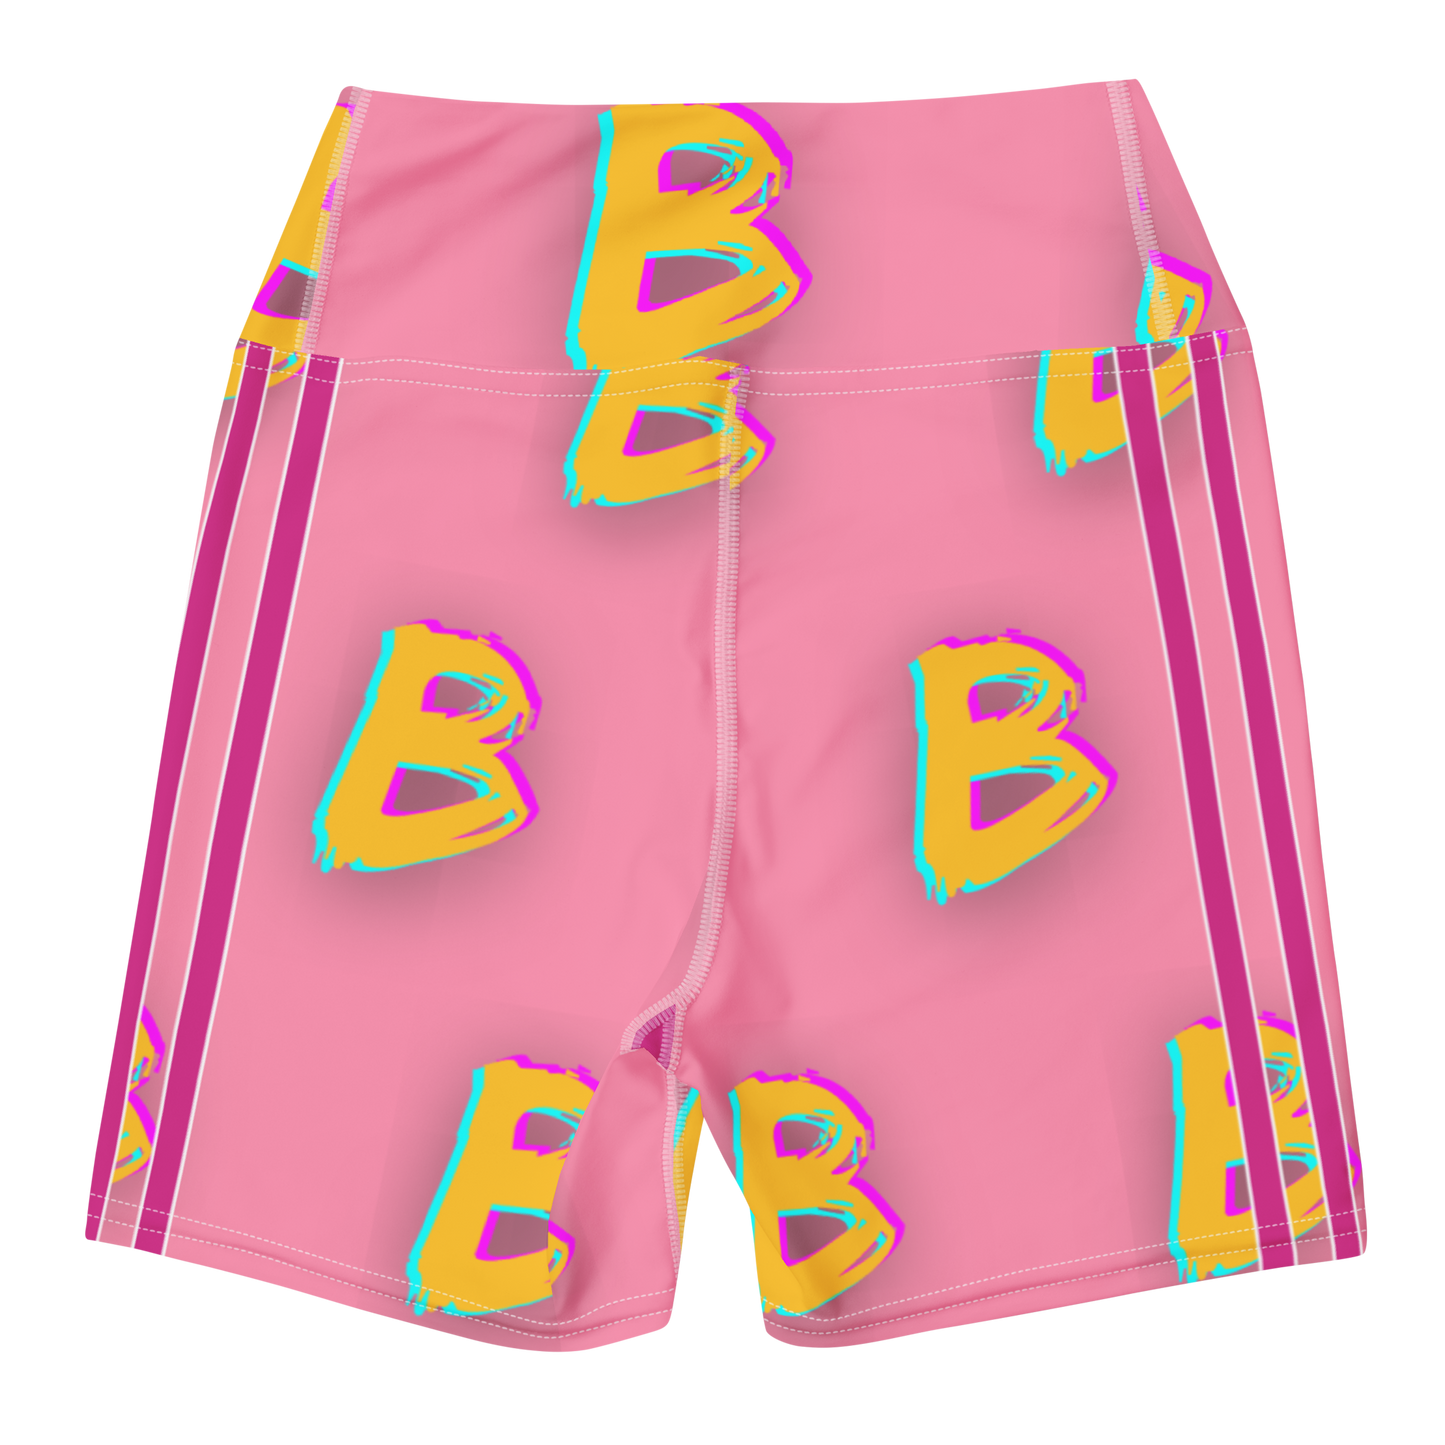 BBBBBBB Yoga Shorts